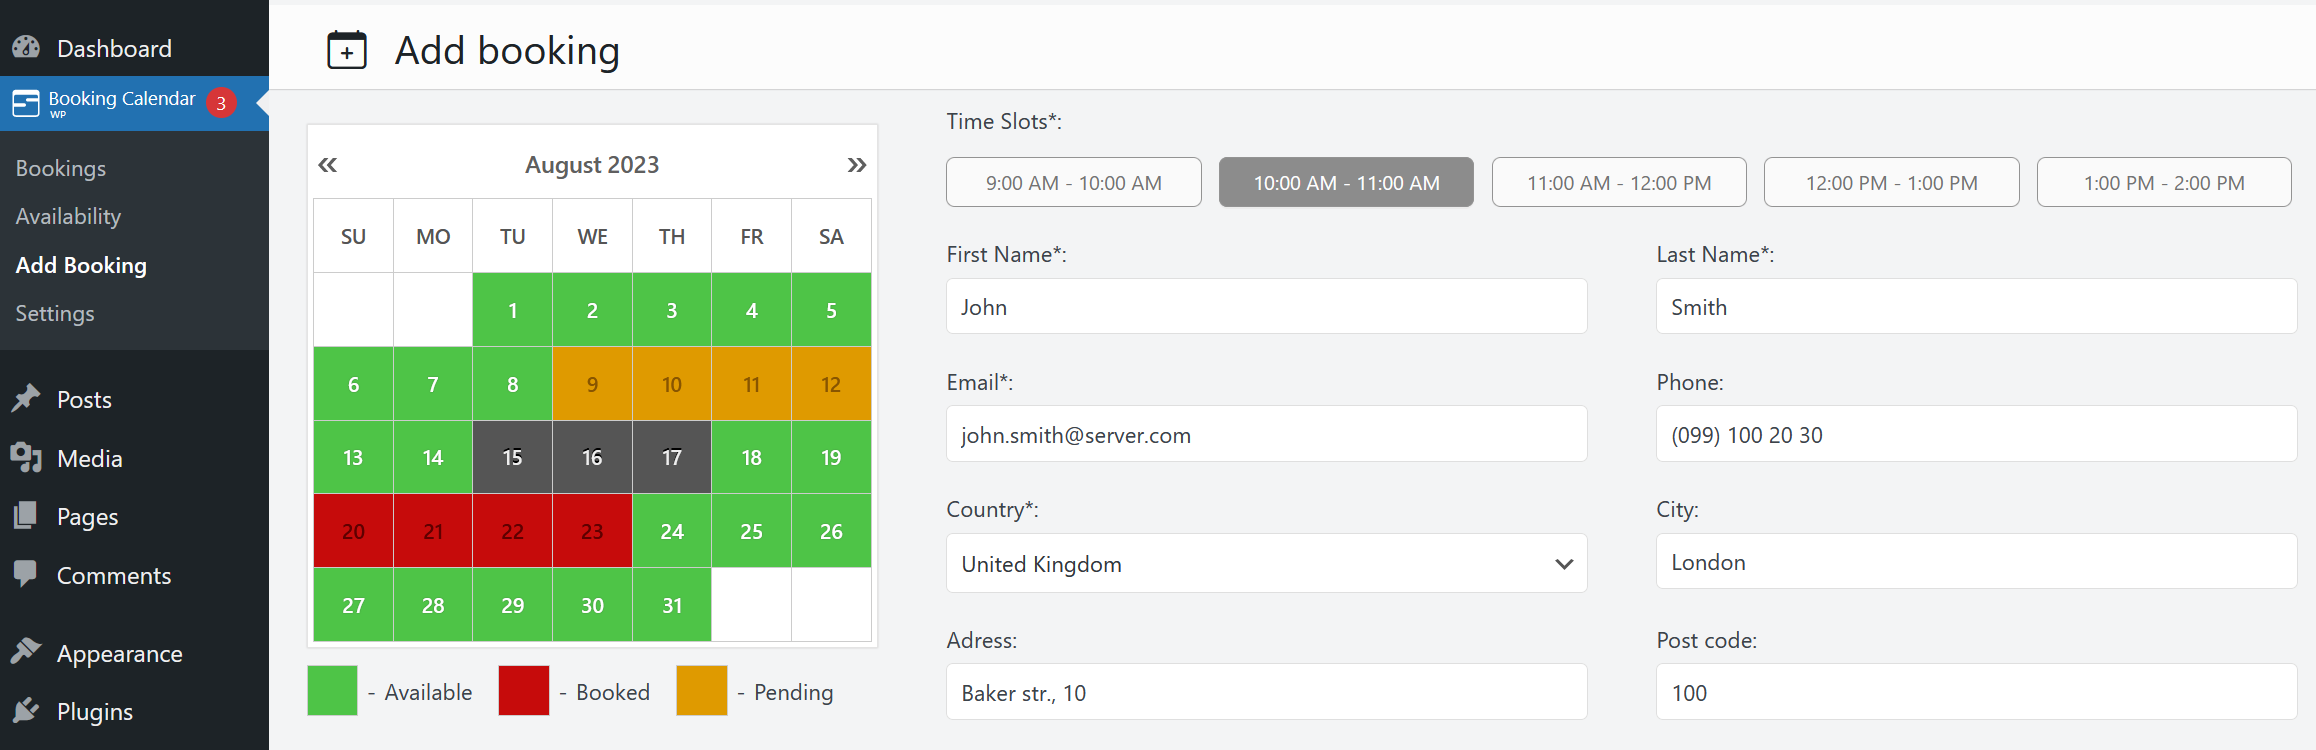 WP Booking Calendar Preview Wordpress Plugin - Rating, Reviews, Demo & Download